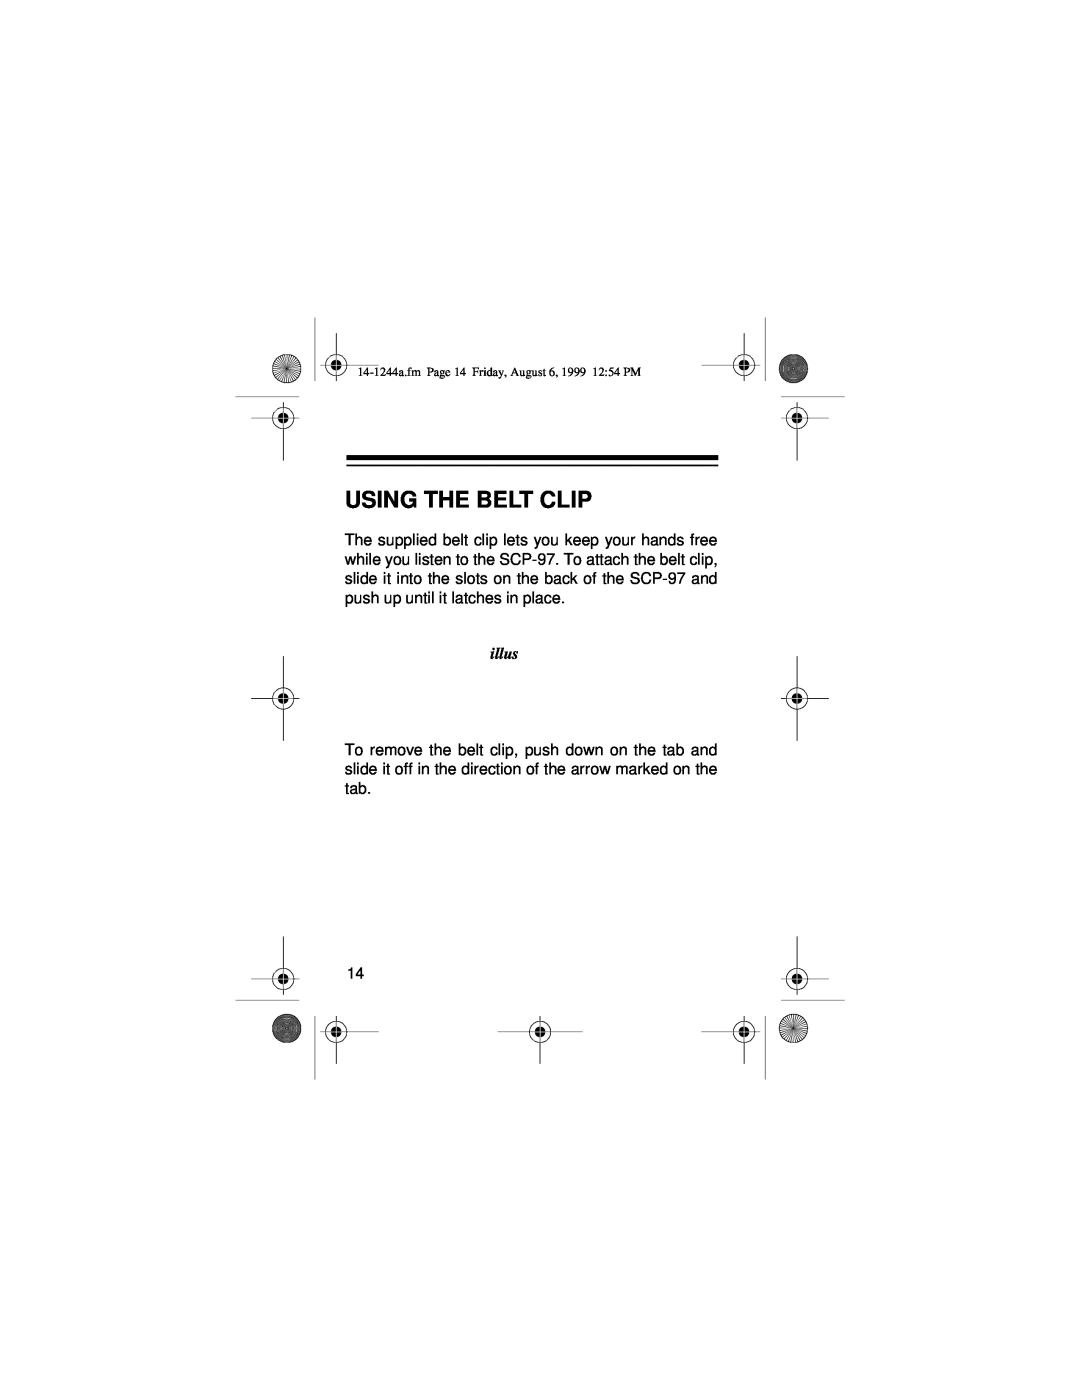 Optimus SCP-97 owner manual Using The Belt Clip, illus 